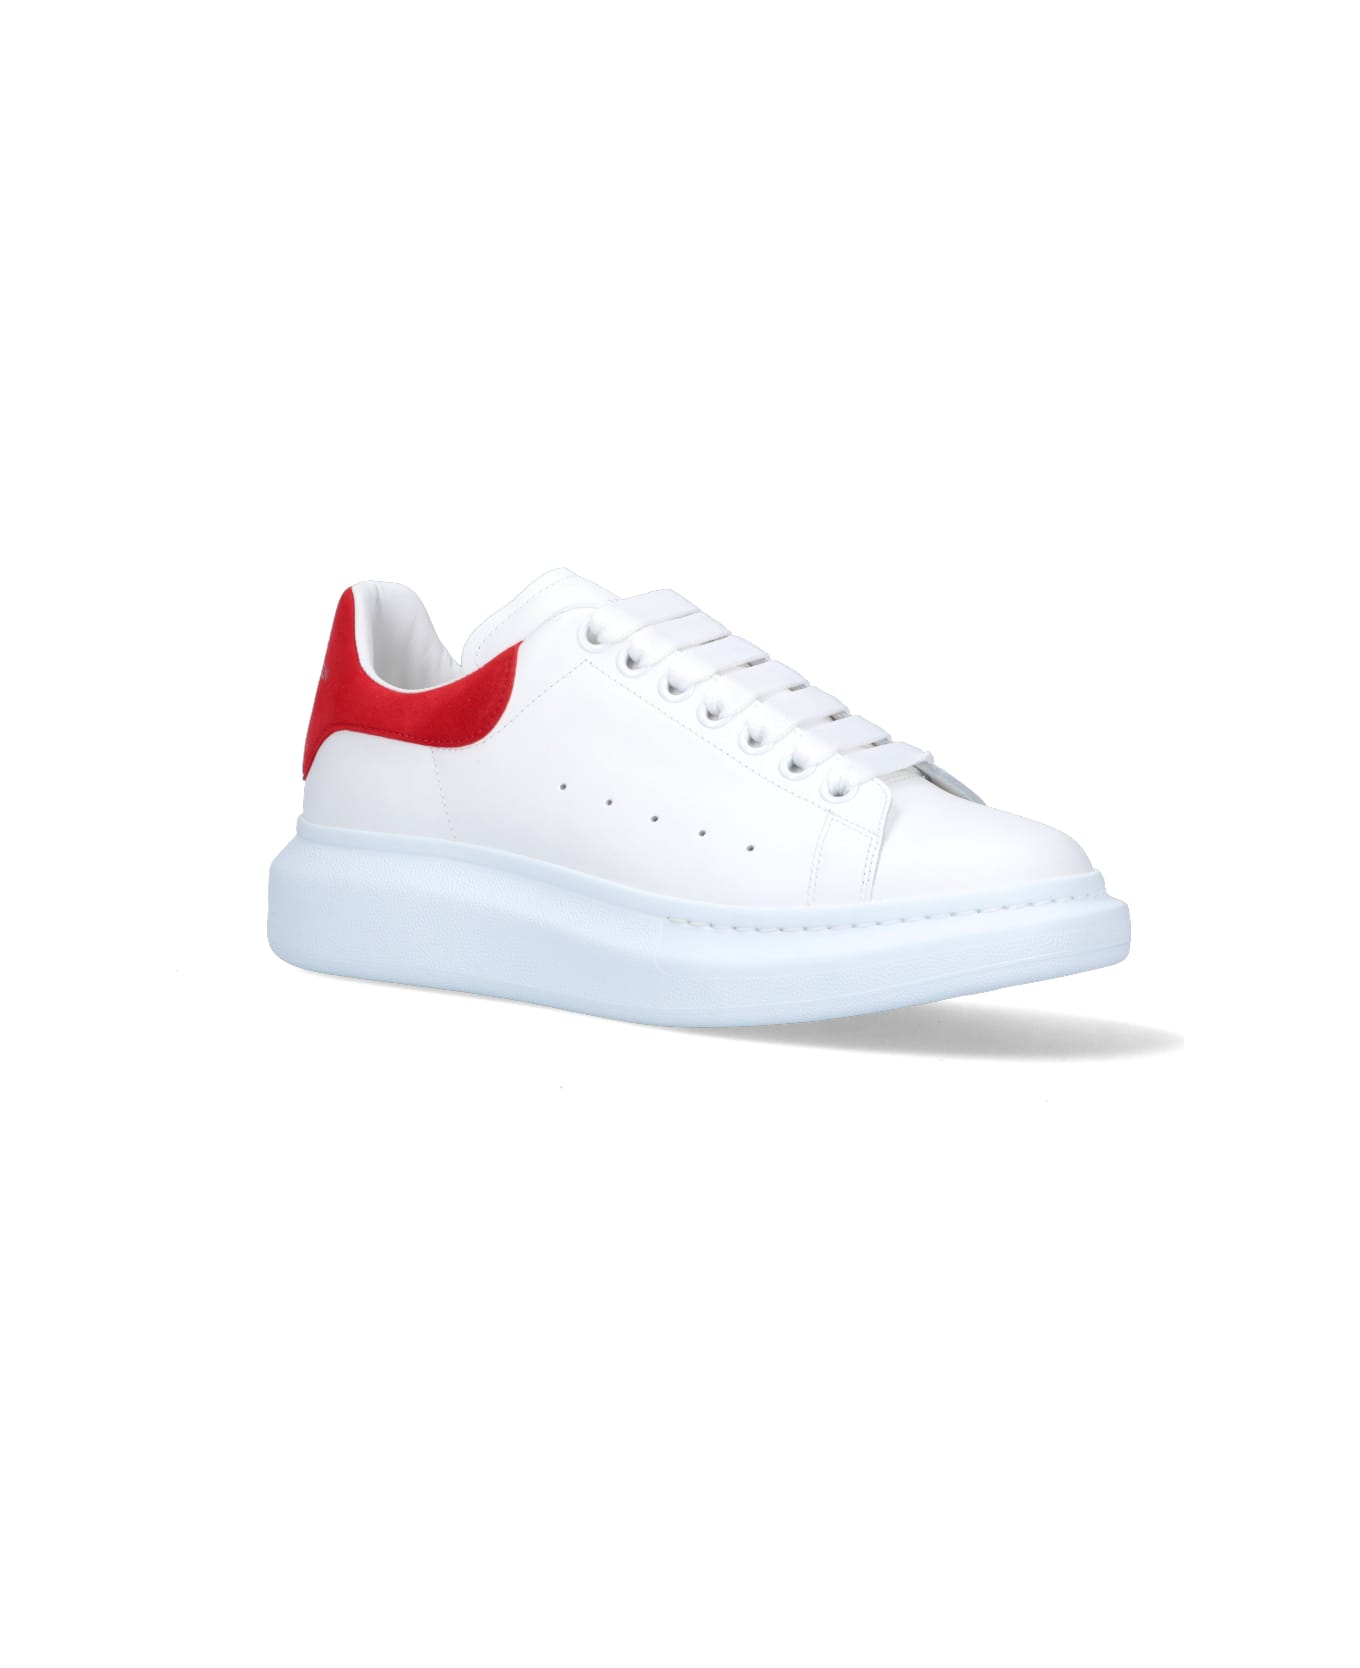 Alexander McQueen Oversize Sneakers - White